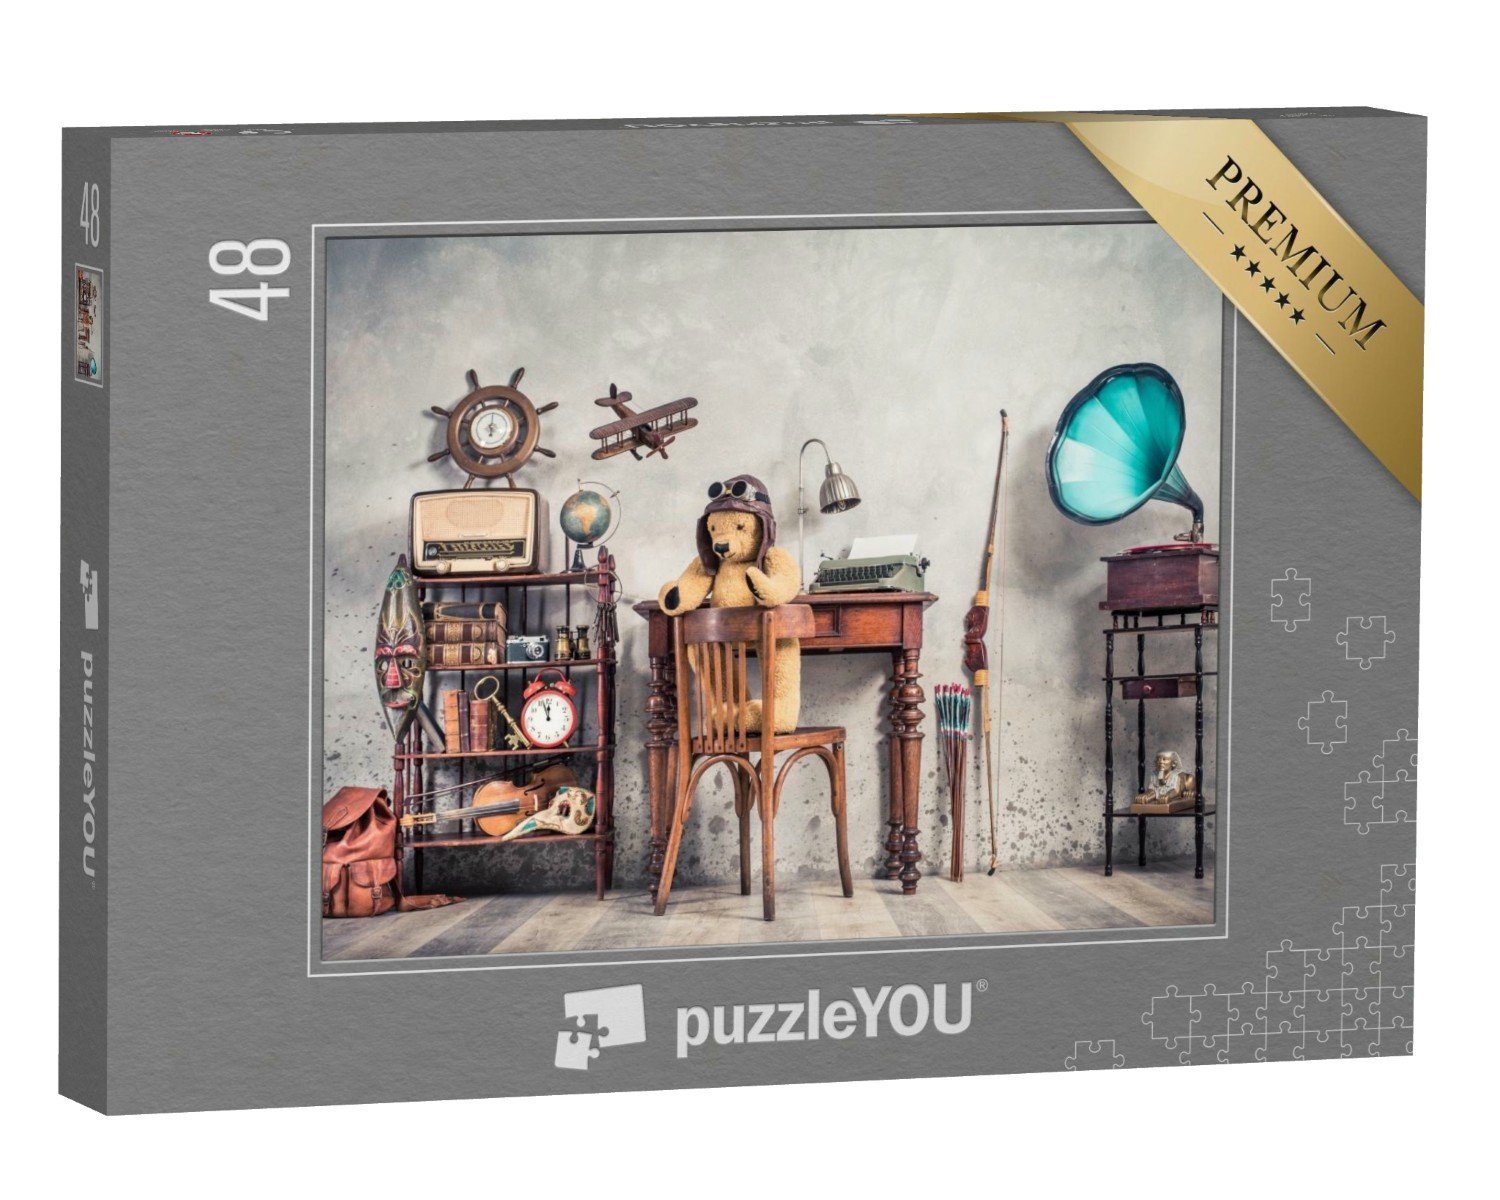 puzzleYOU Puzzle Retro-Stil: Spielsachen und Gebrauchsgegenstände, 48 Puzzleteile, puzzleYOU-Kollektionen Nostalgie